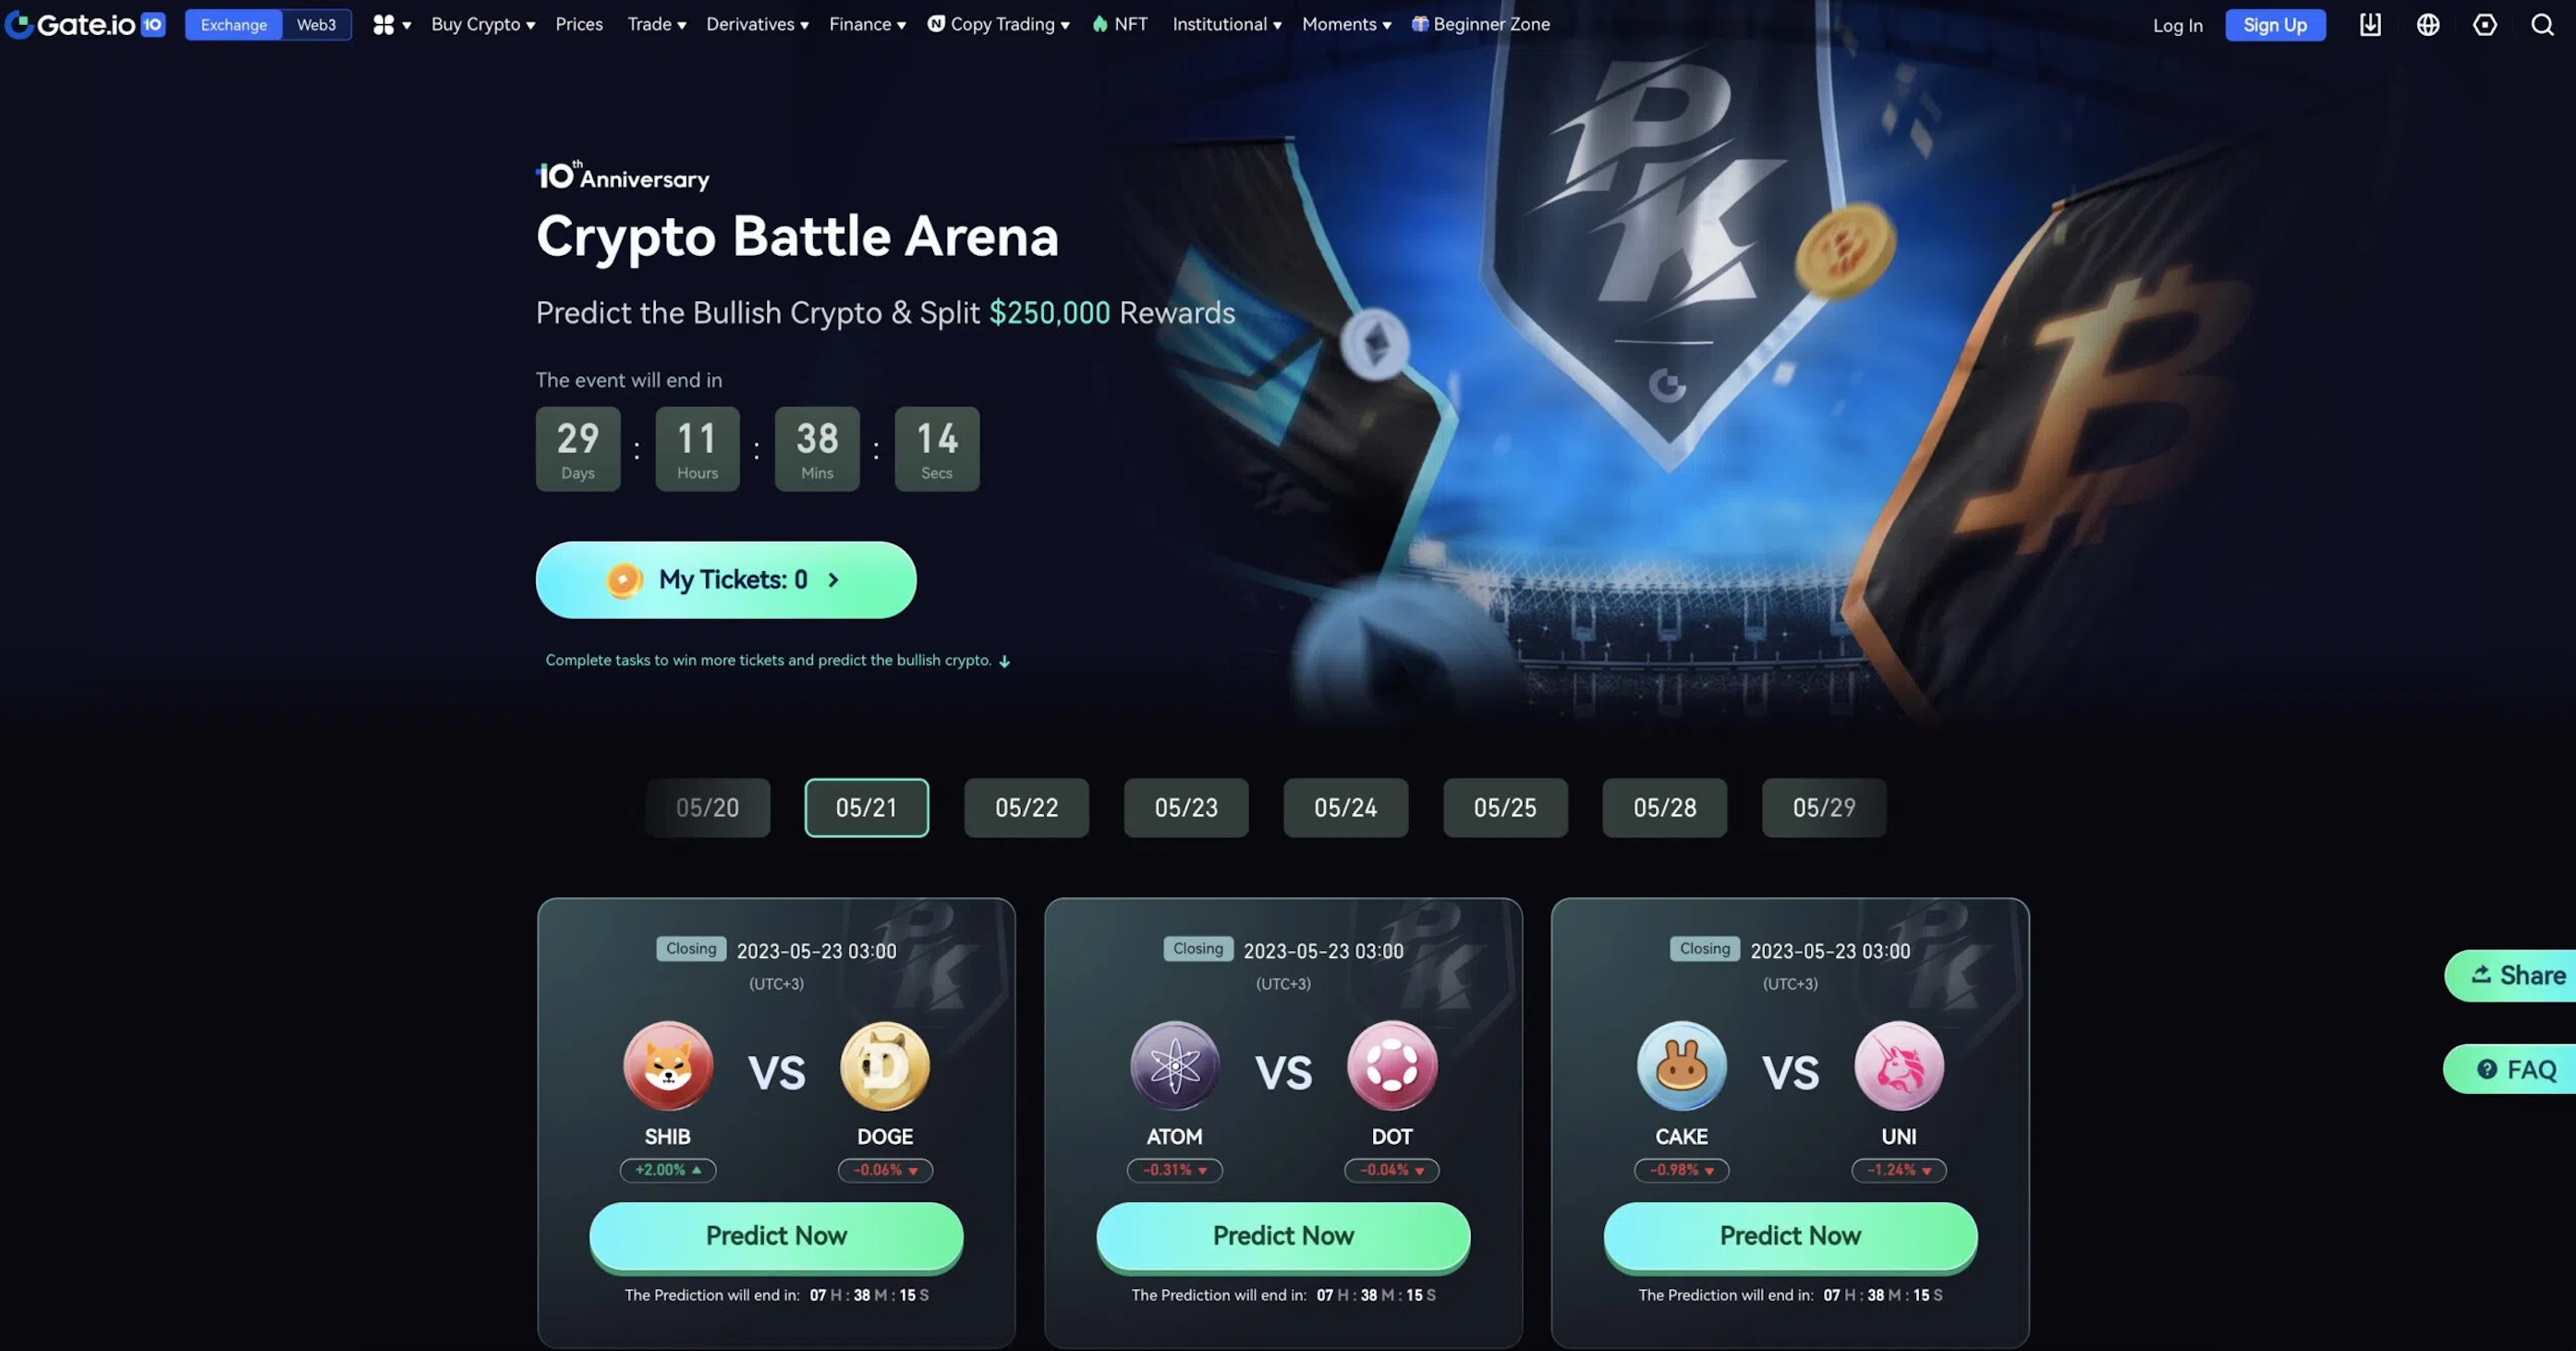 Crypto Battle Arena on Gate.io